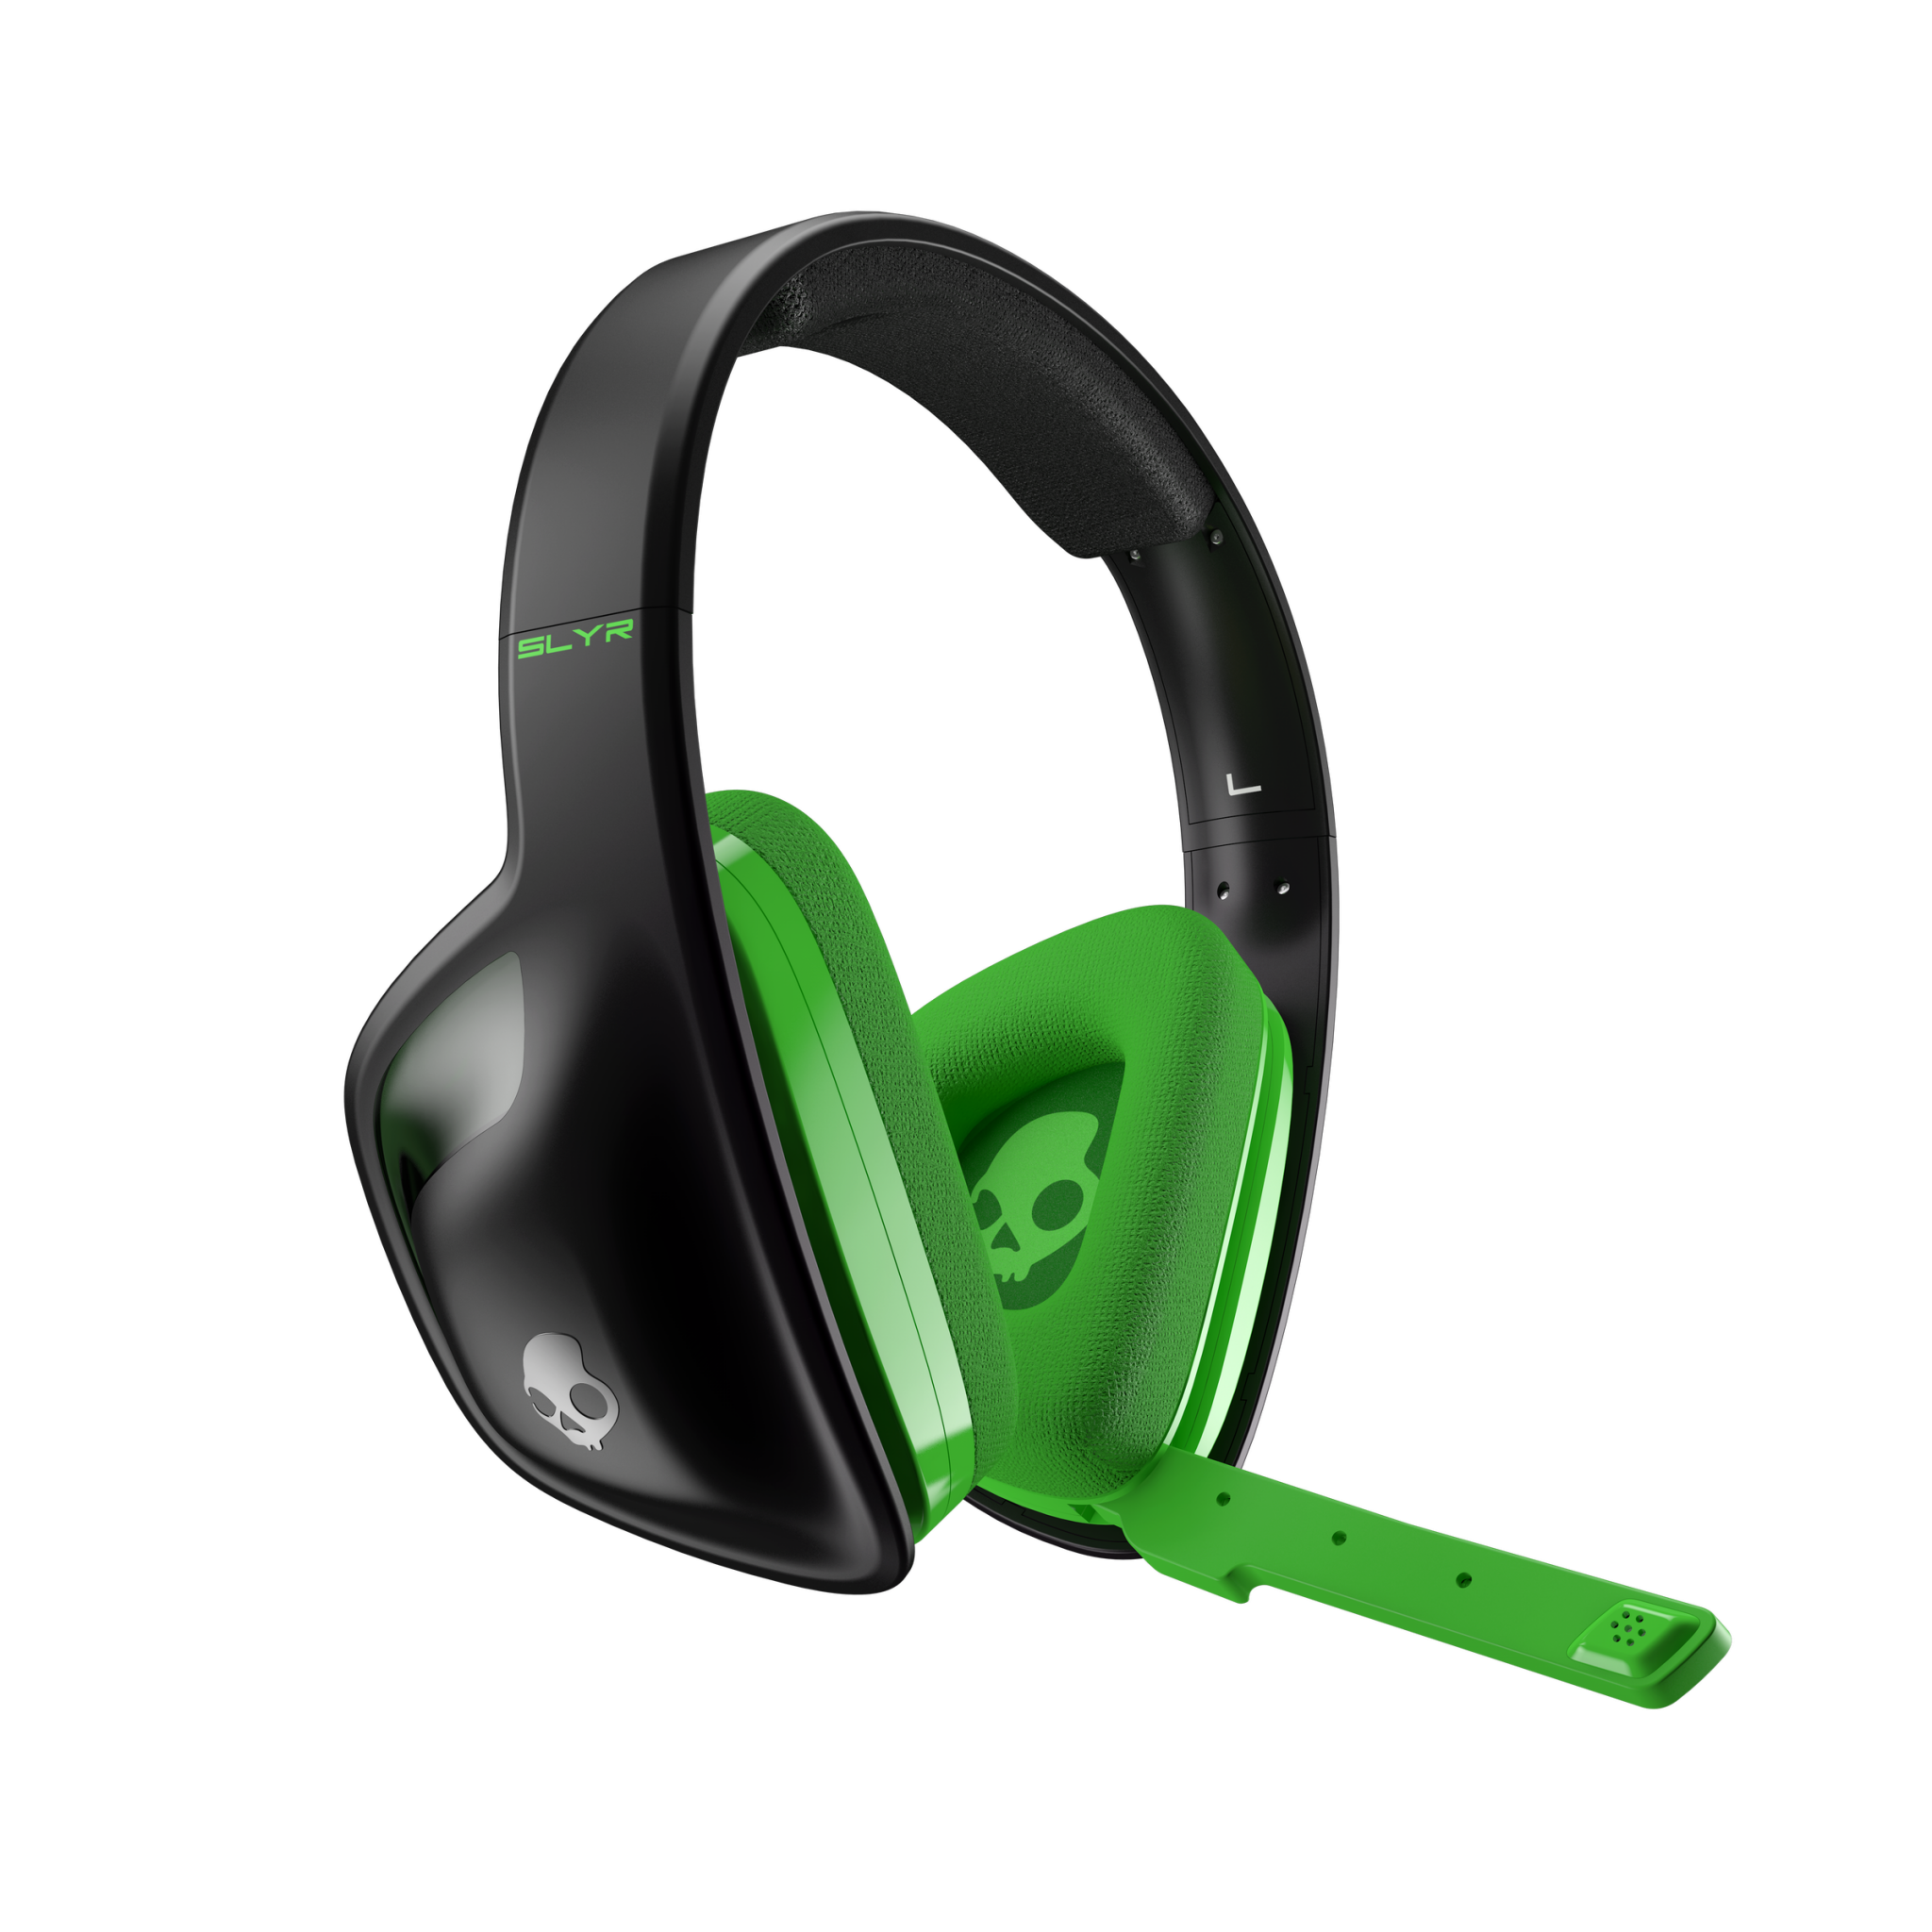 Skullcandy Releases Astro Designed SLYR Headset For Xbox One